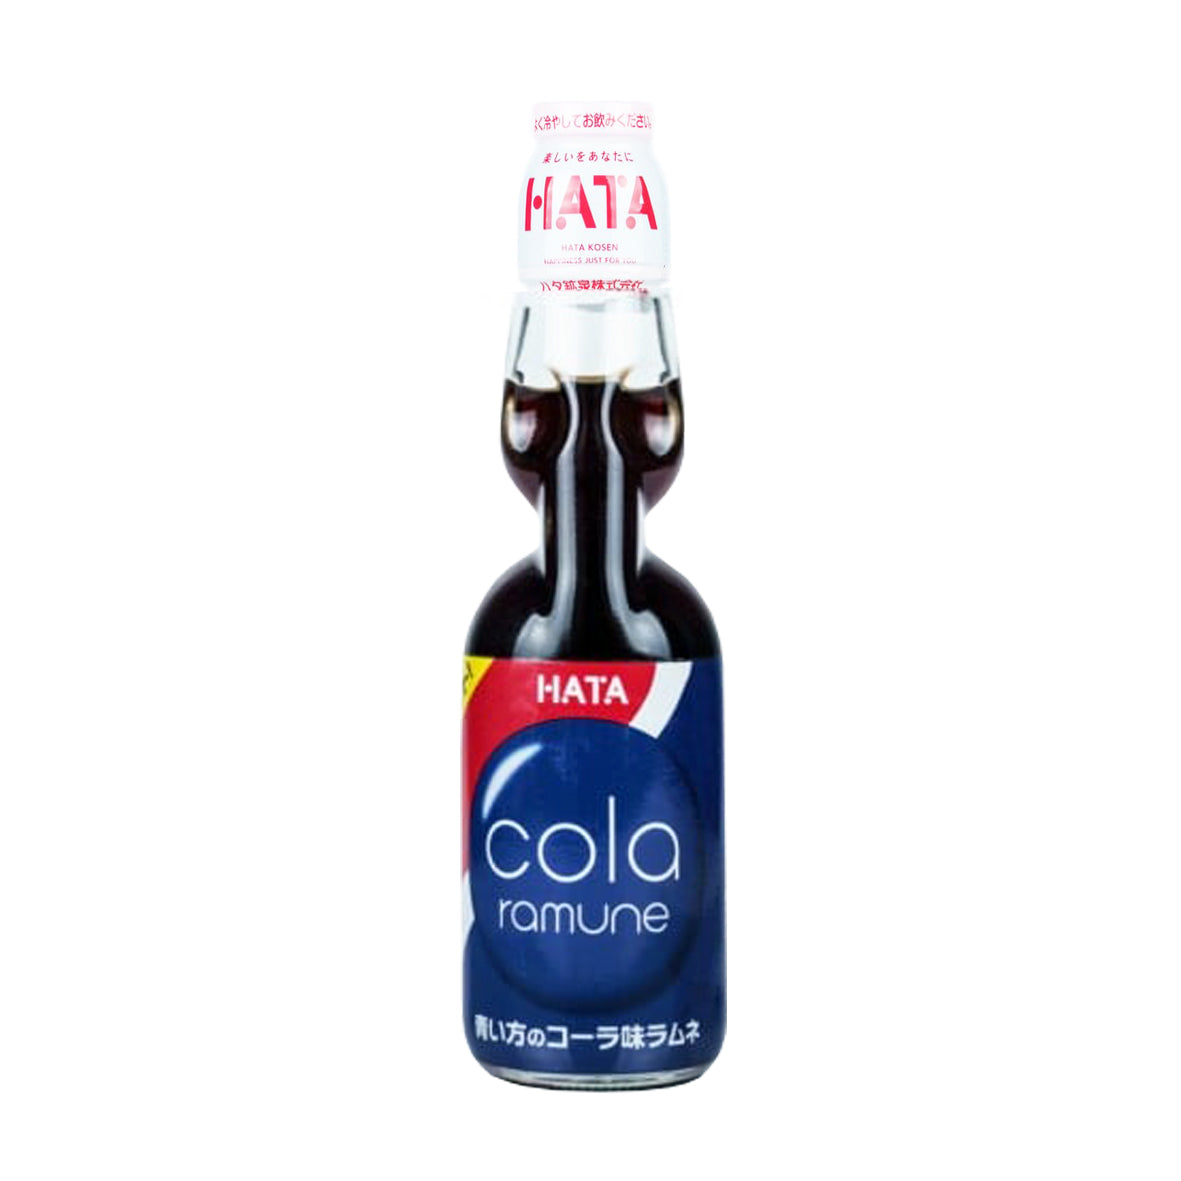 HATA Ramune - Cola